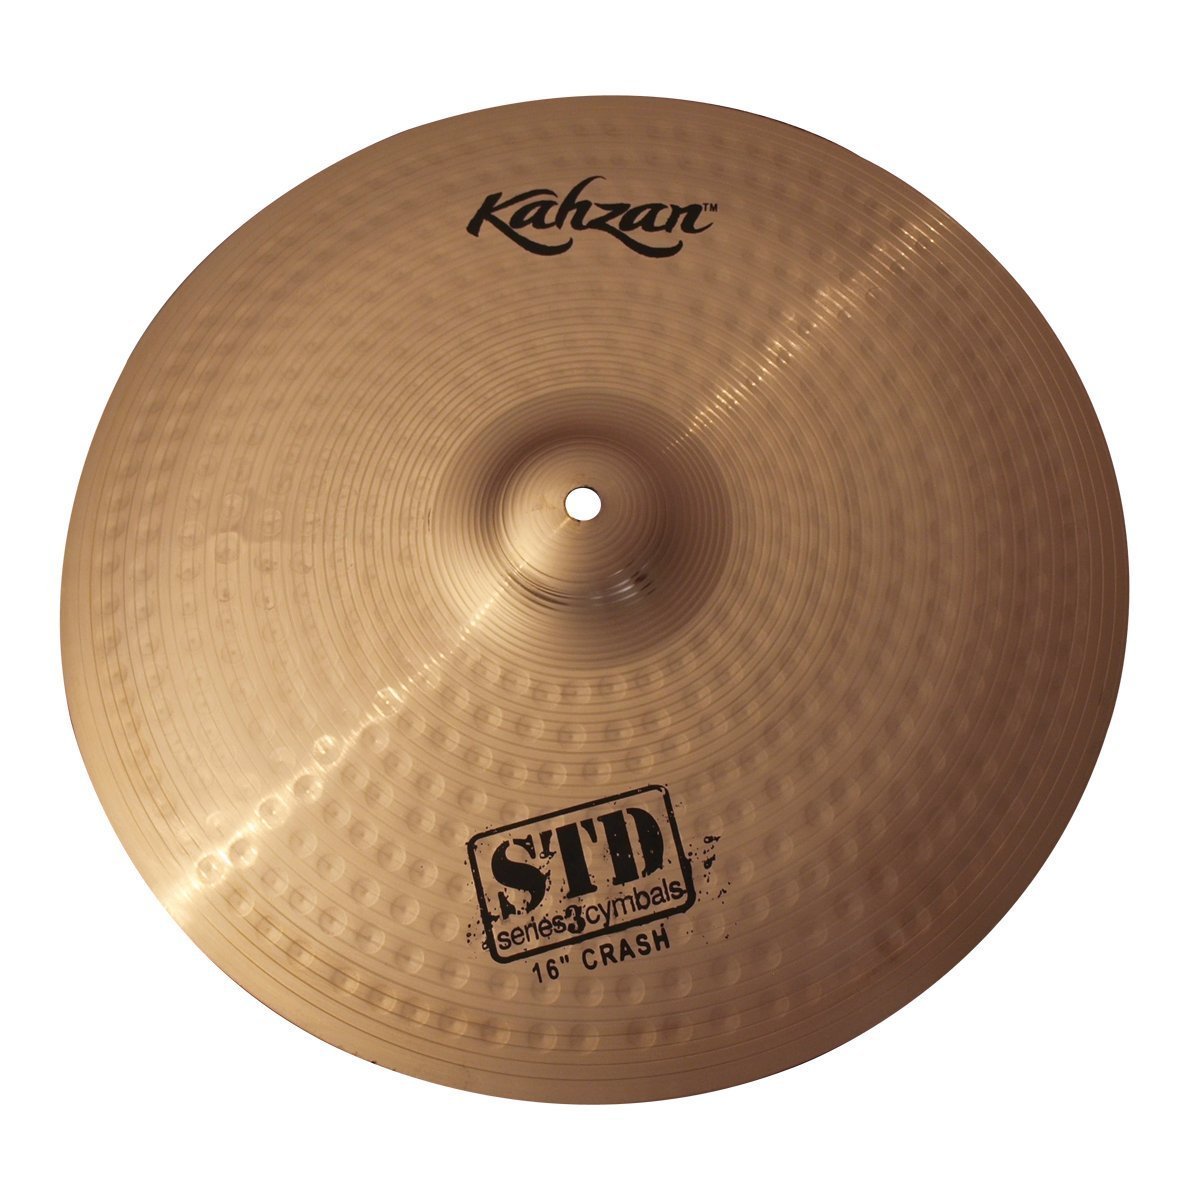 Kahzan 'STD-3 Series' Crash Cymbal (16")